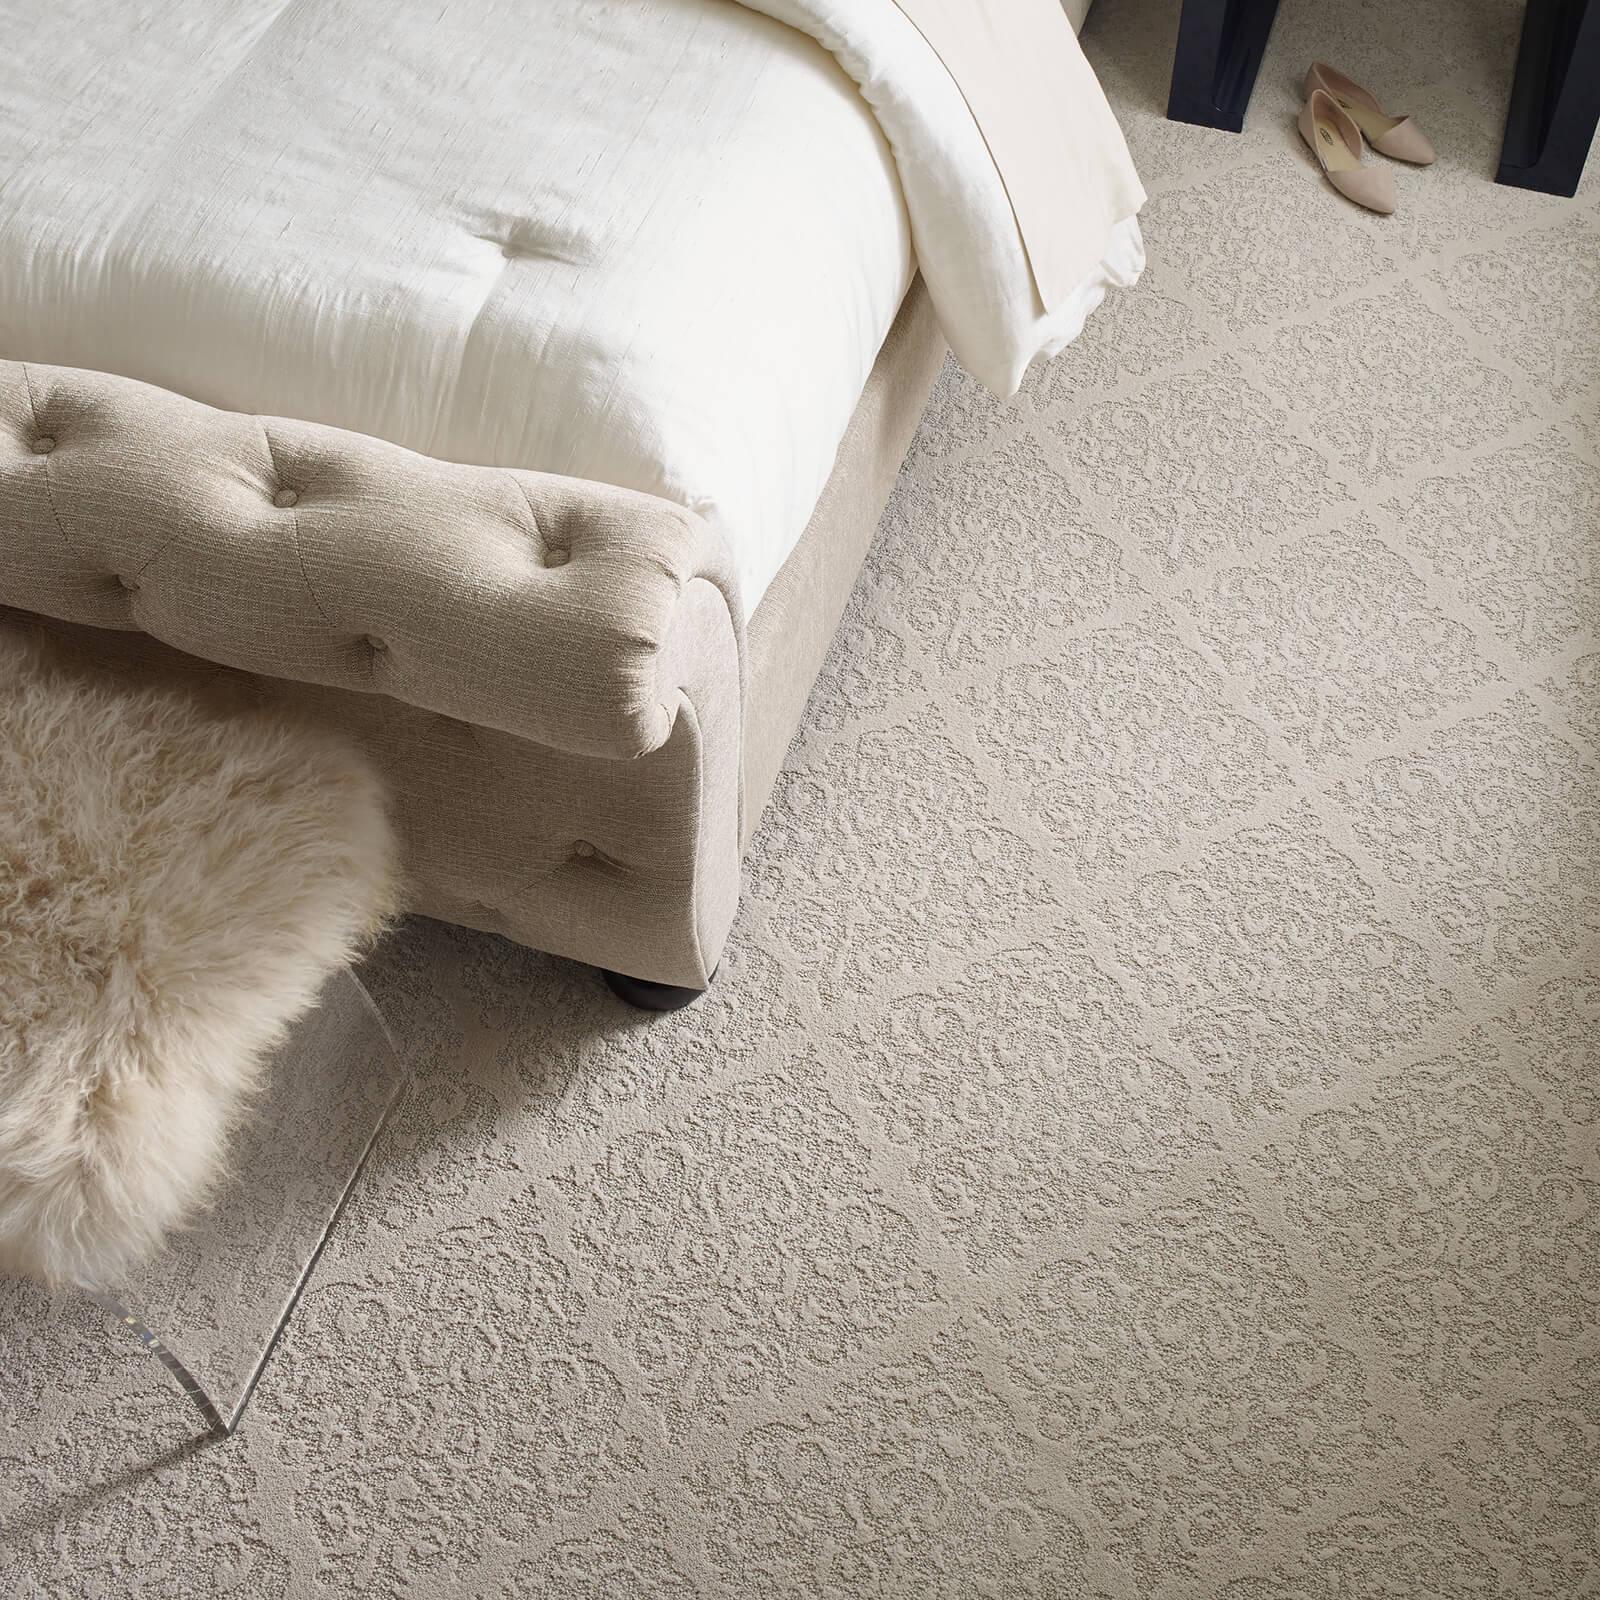 Laminate floors in bedroom | America's Flooring Store